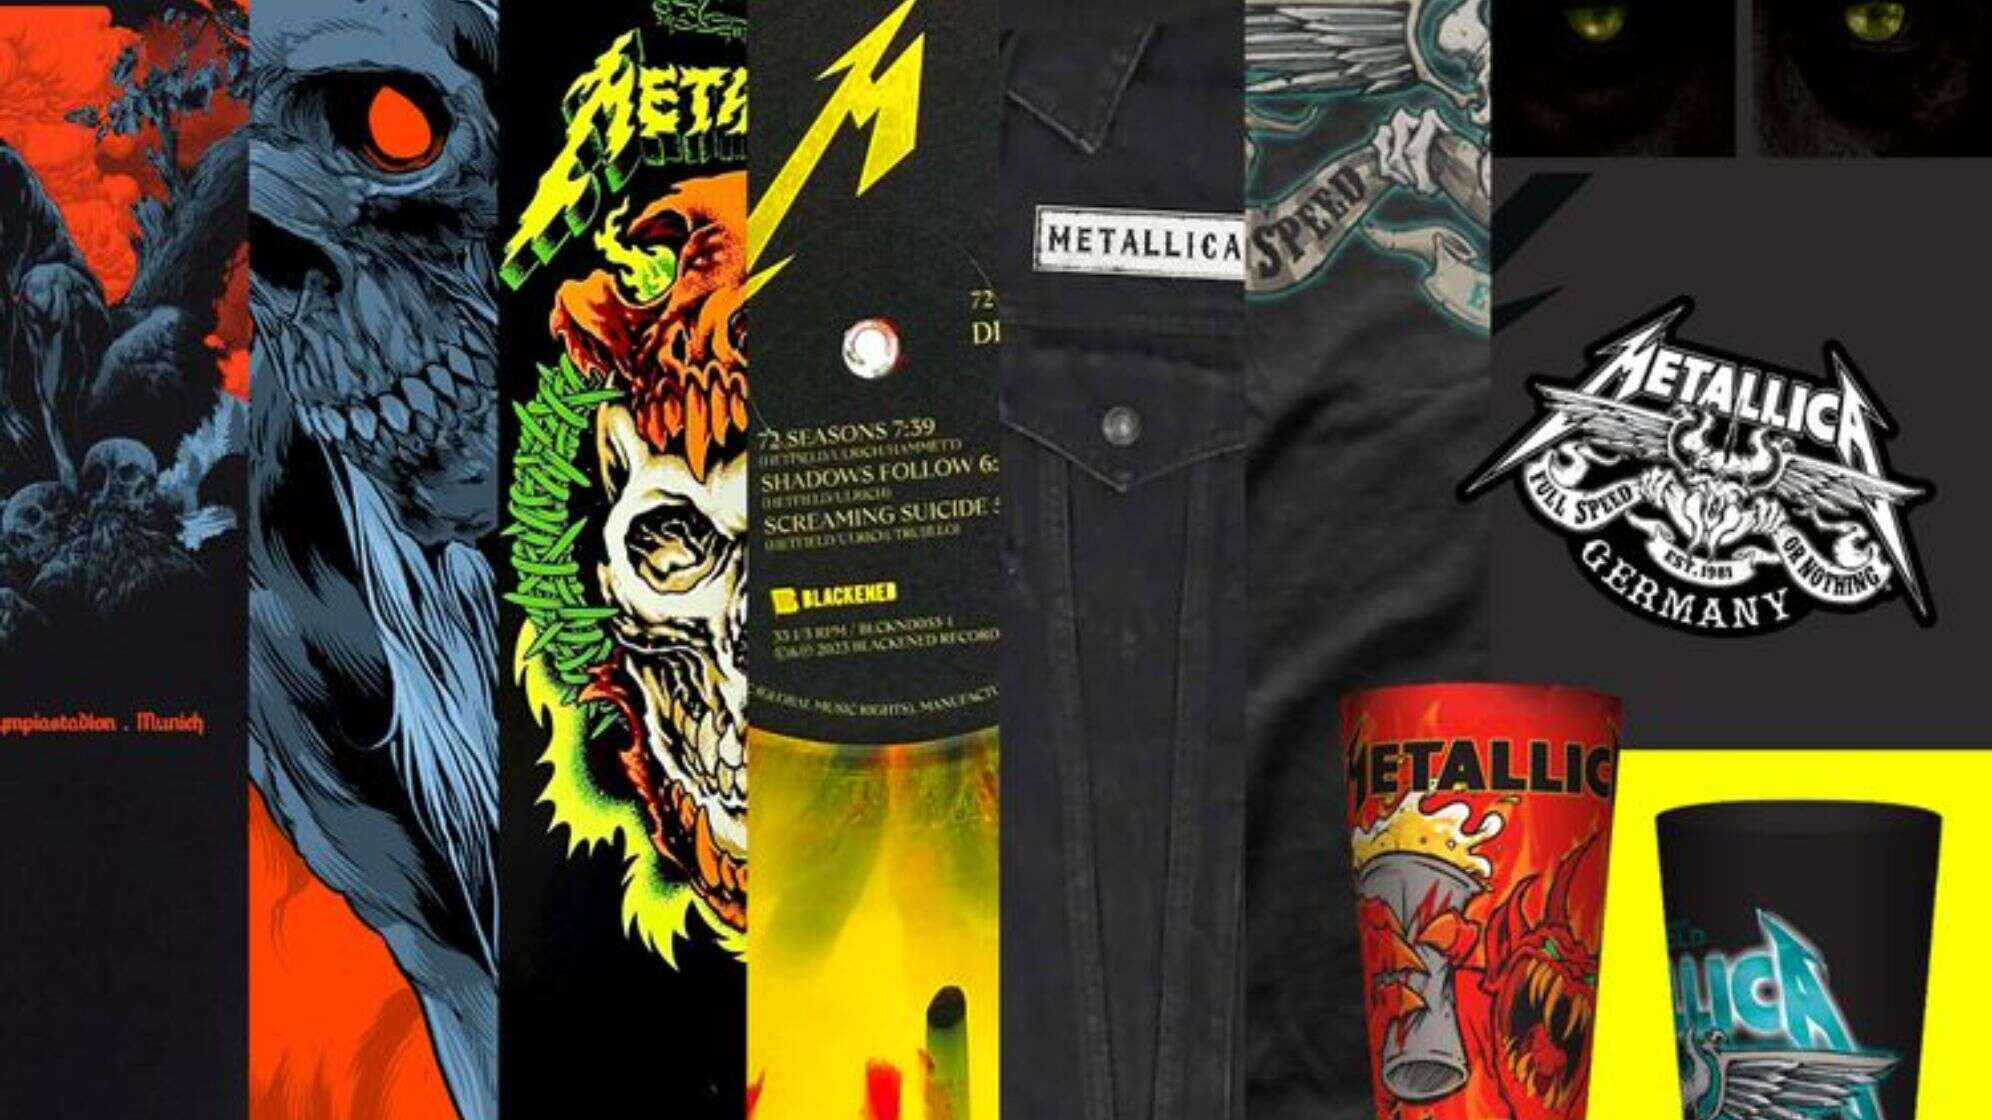 Die Pop Up-Store Artikel für Metallica in München